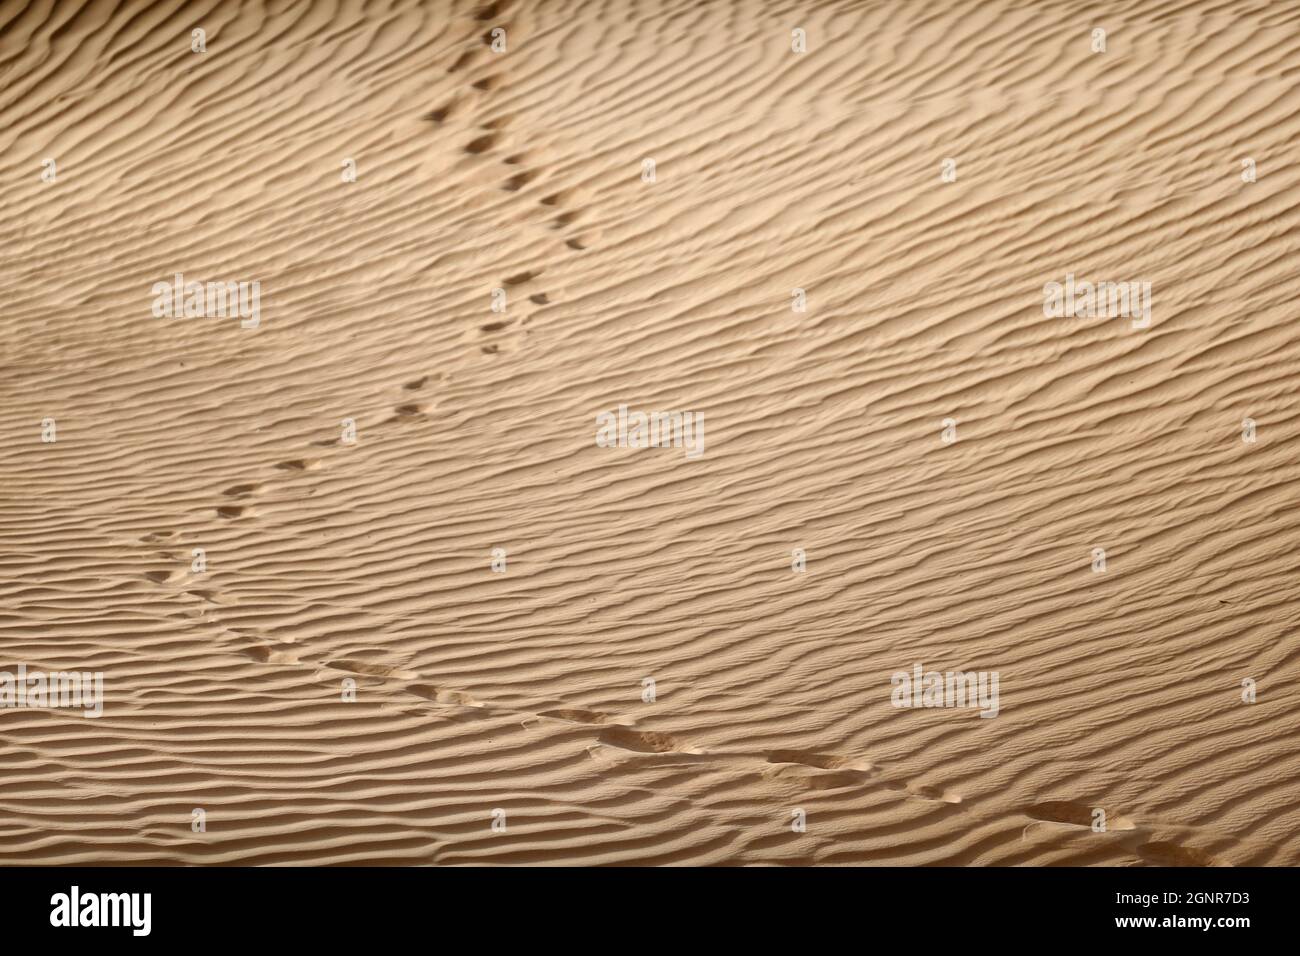 Motifs de sable et empreintes humaines dans un désert. Dubaï. Émirats arabes Unis. Banque D'Images